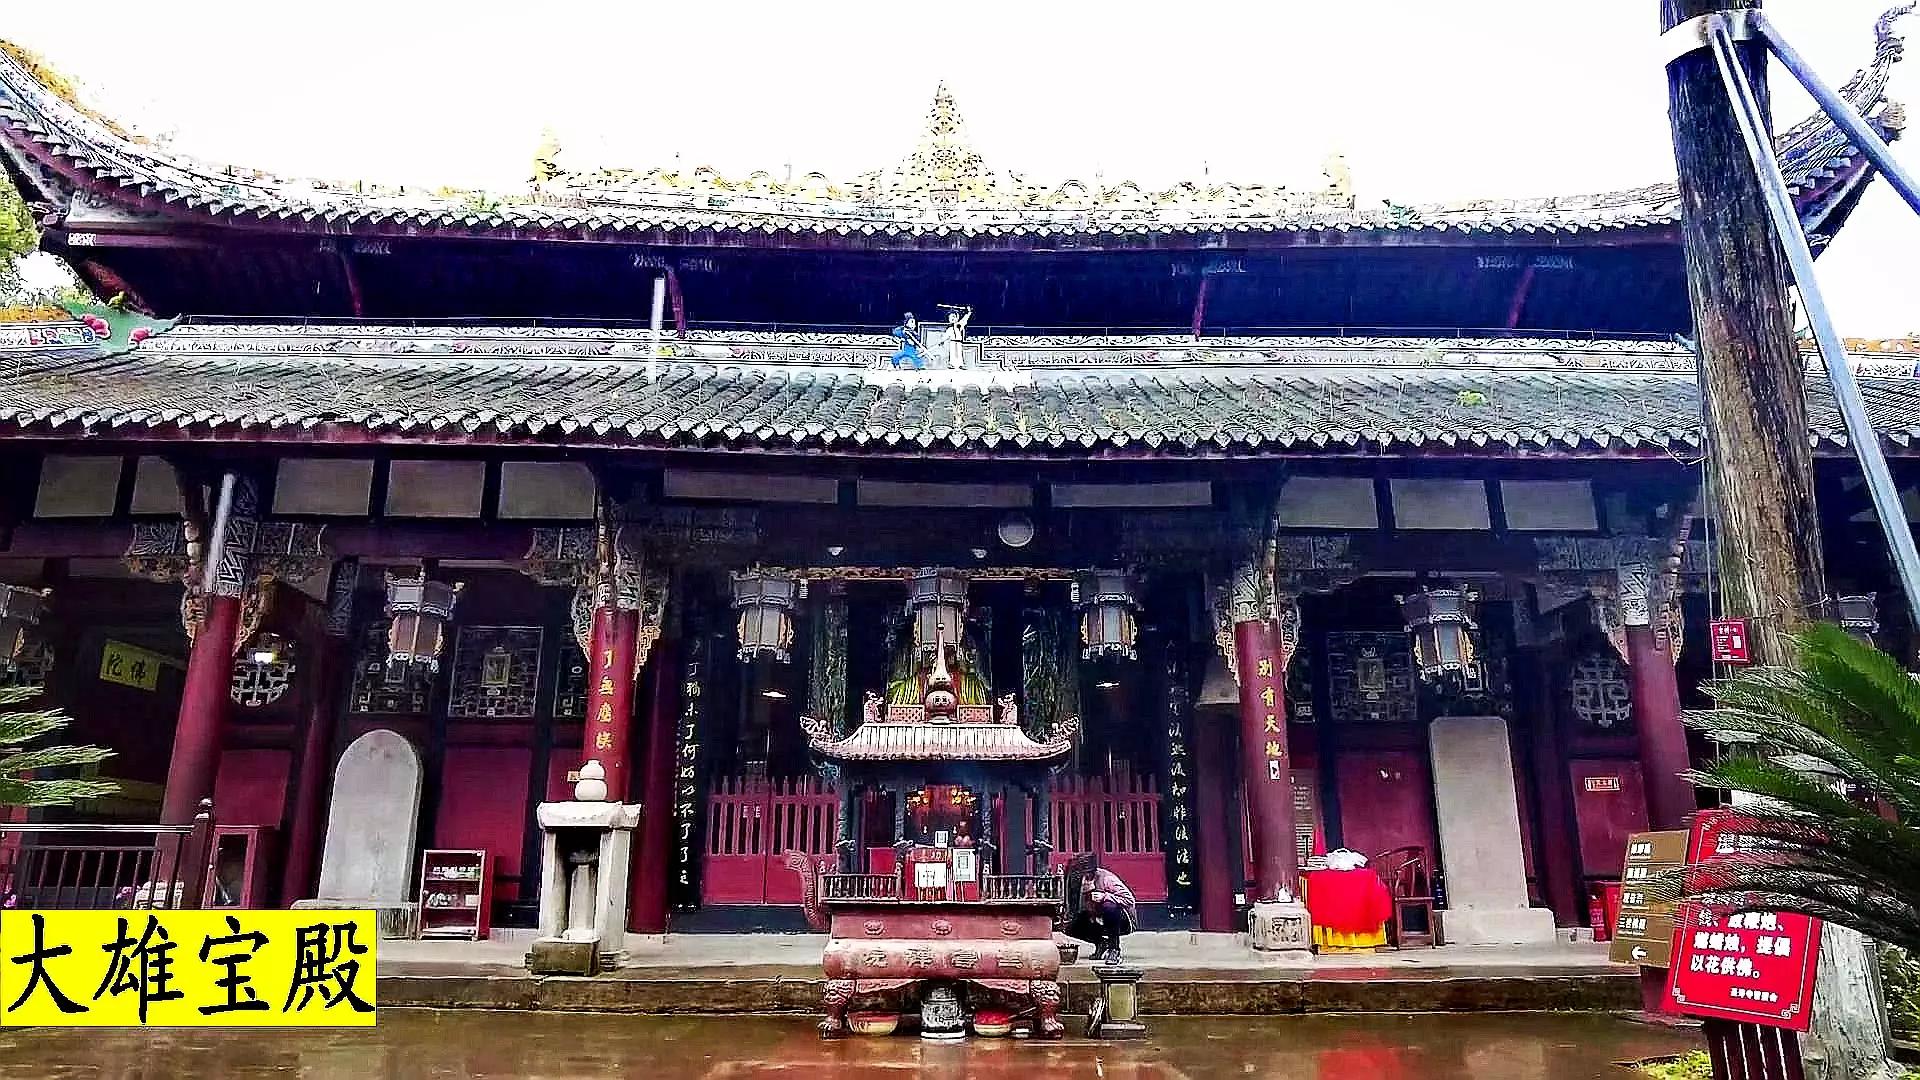 千手观音圣像塑有千只手的寺院——圣寿寺